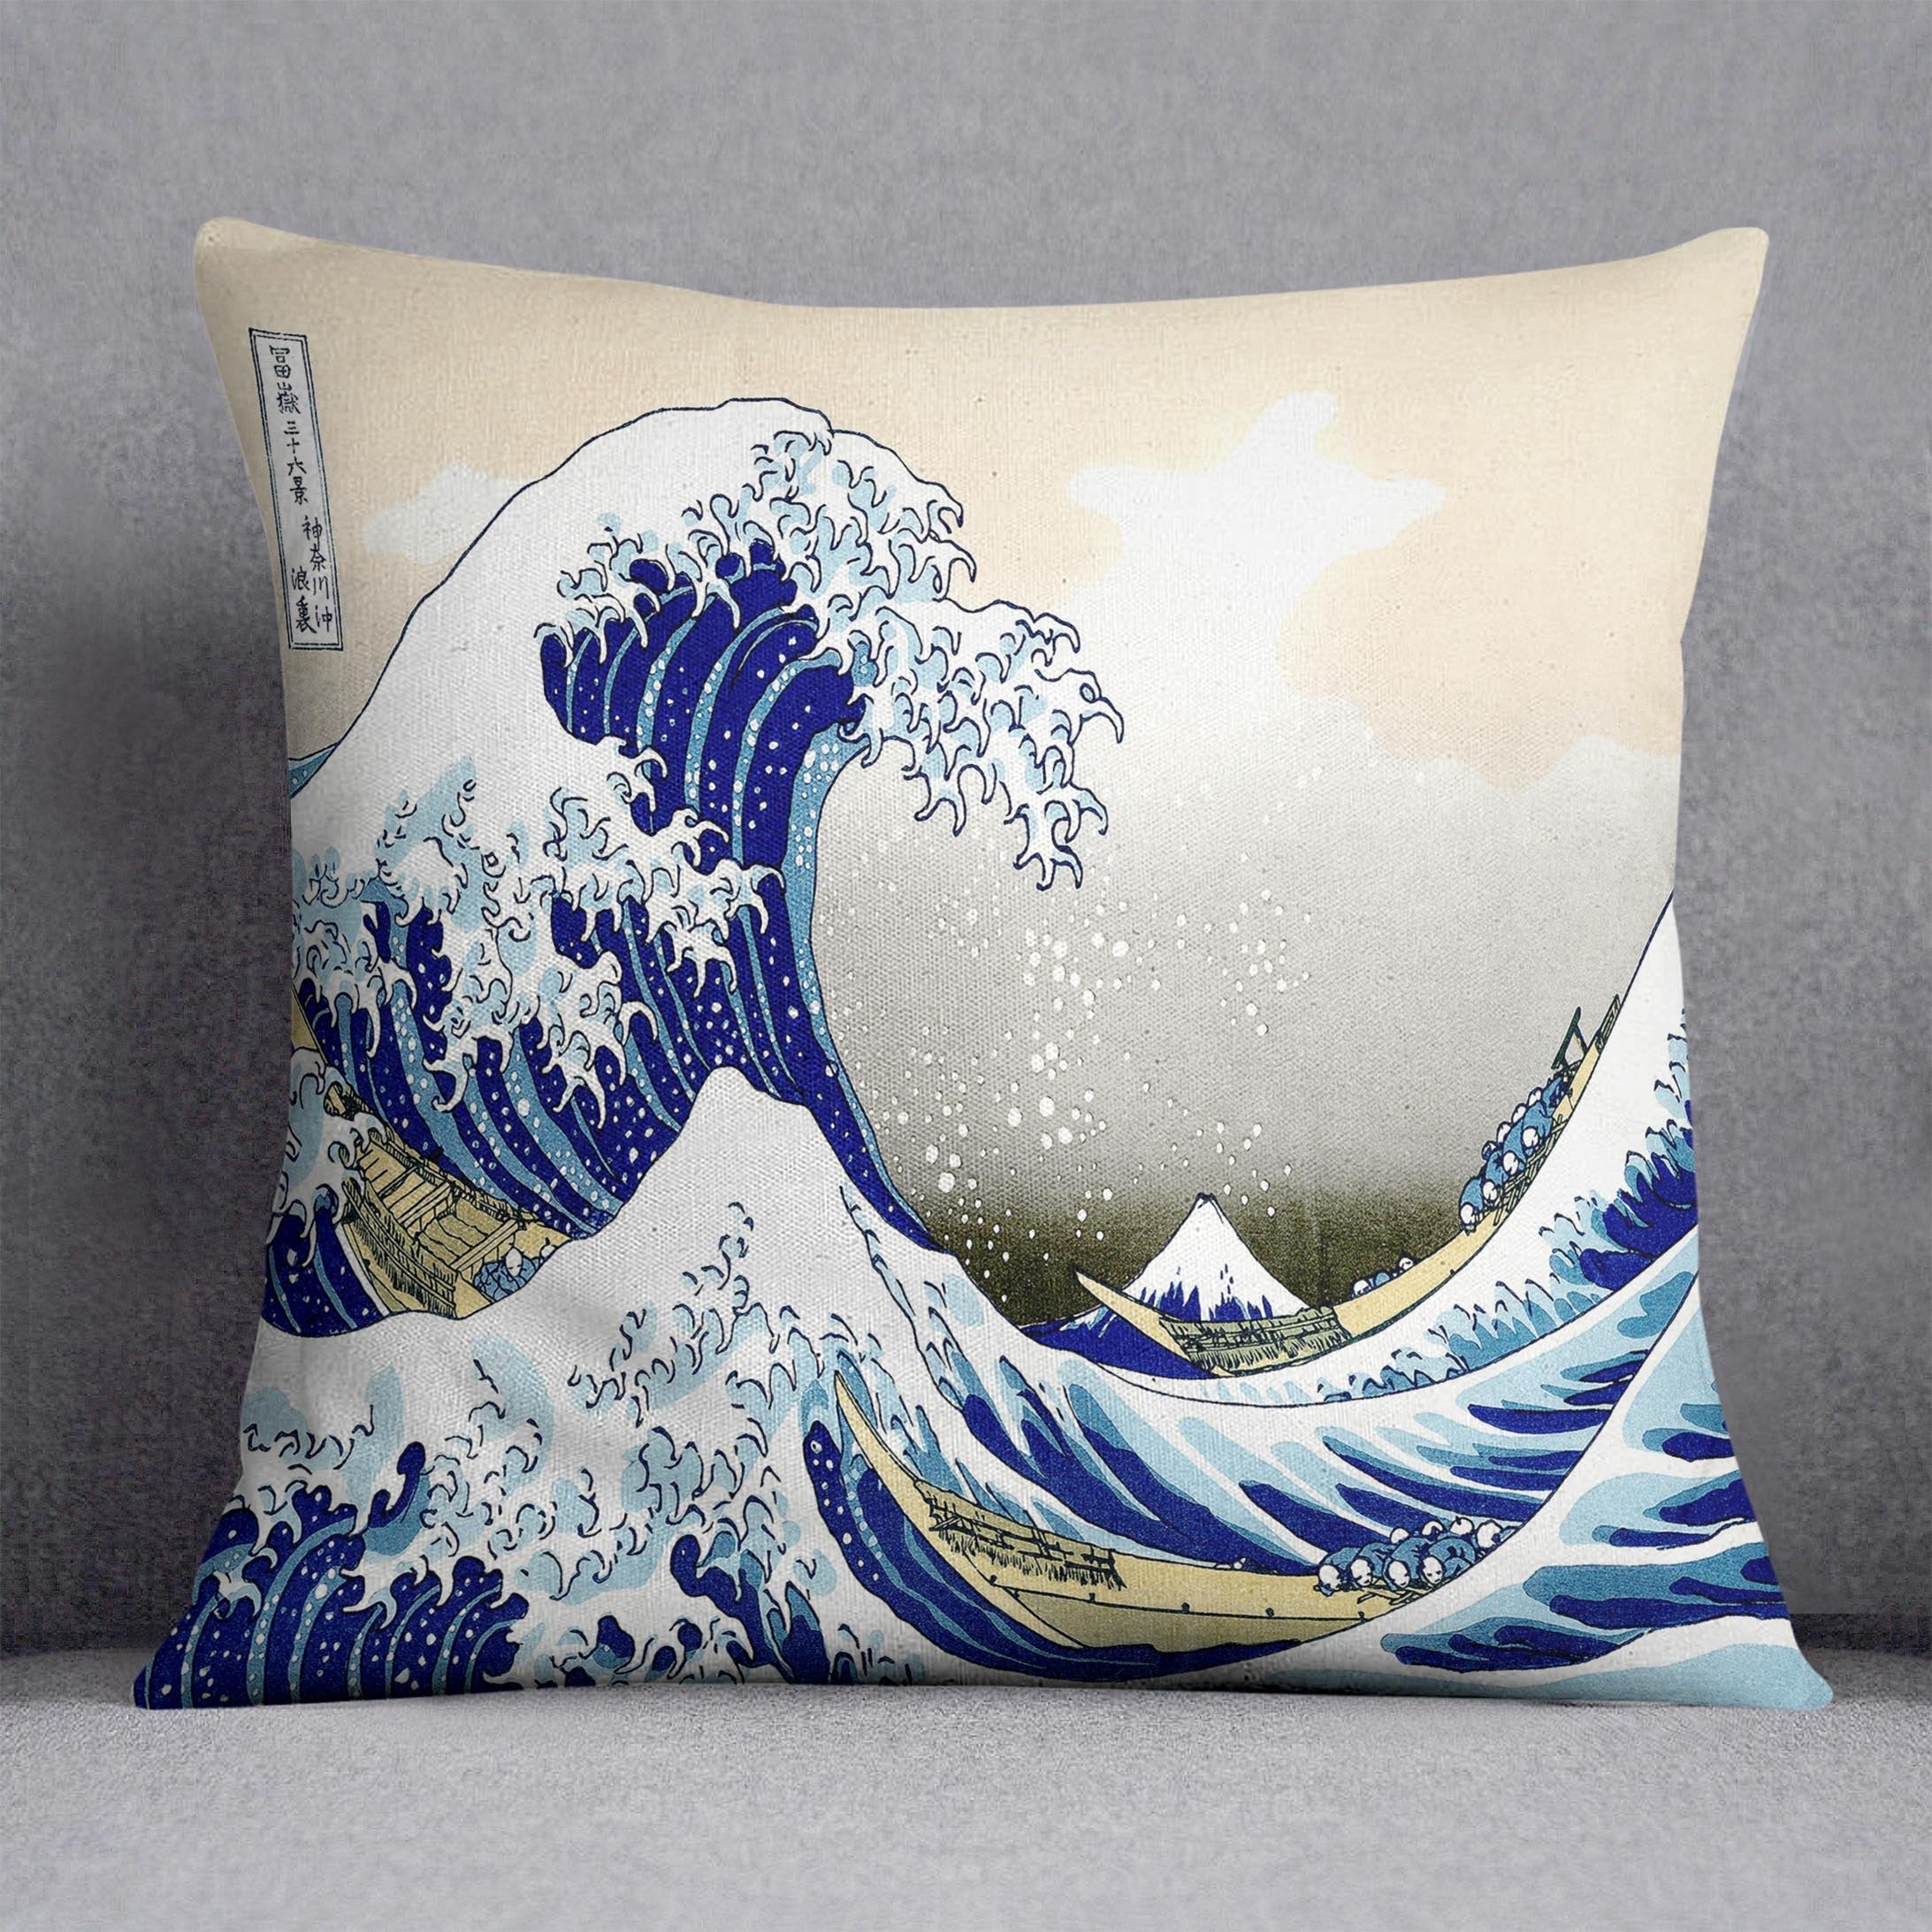 A big wave off Kanagawa by Hokusai Throw Pillow